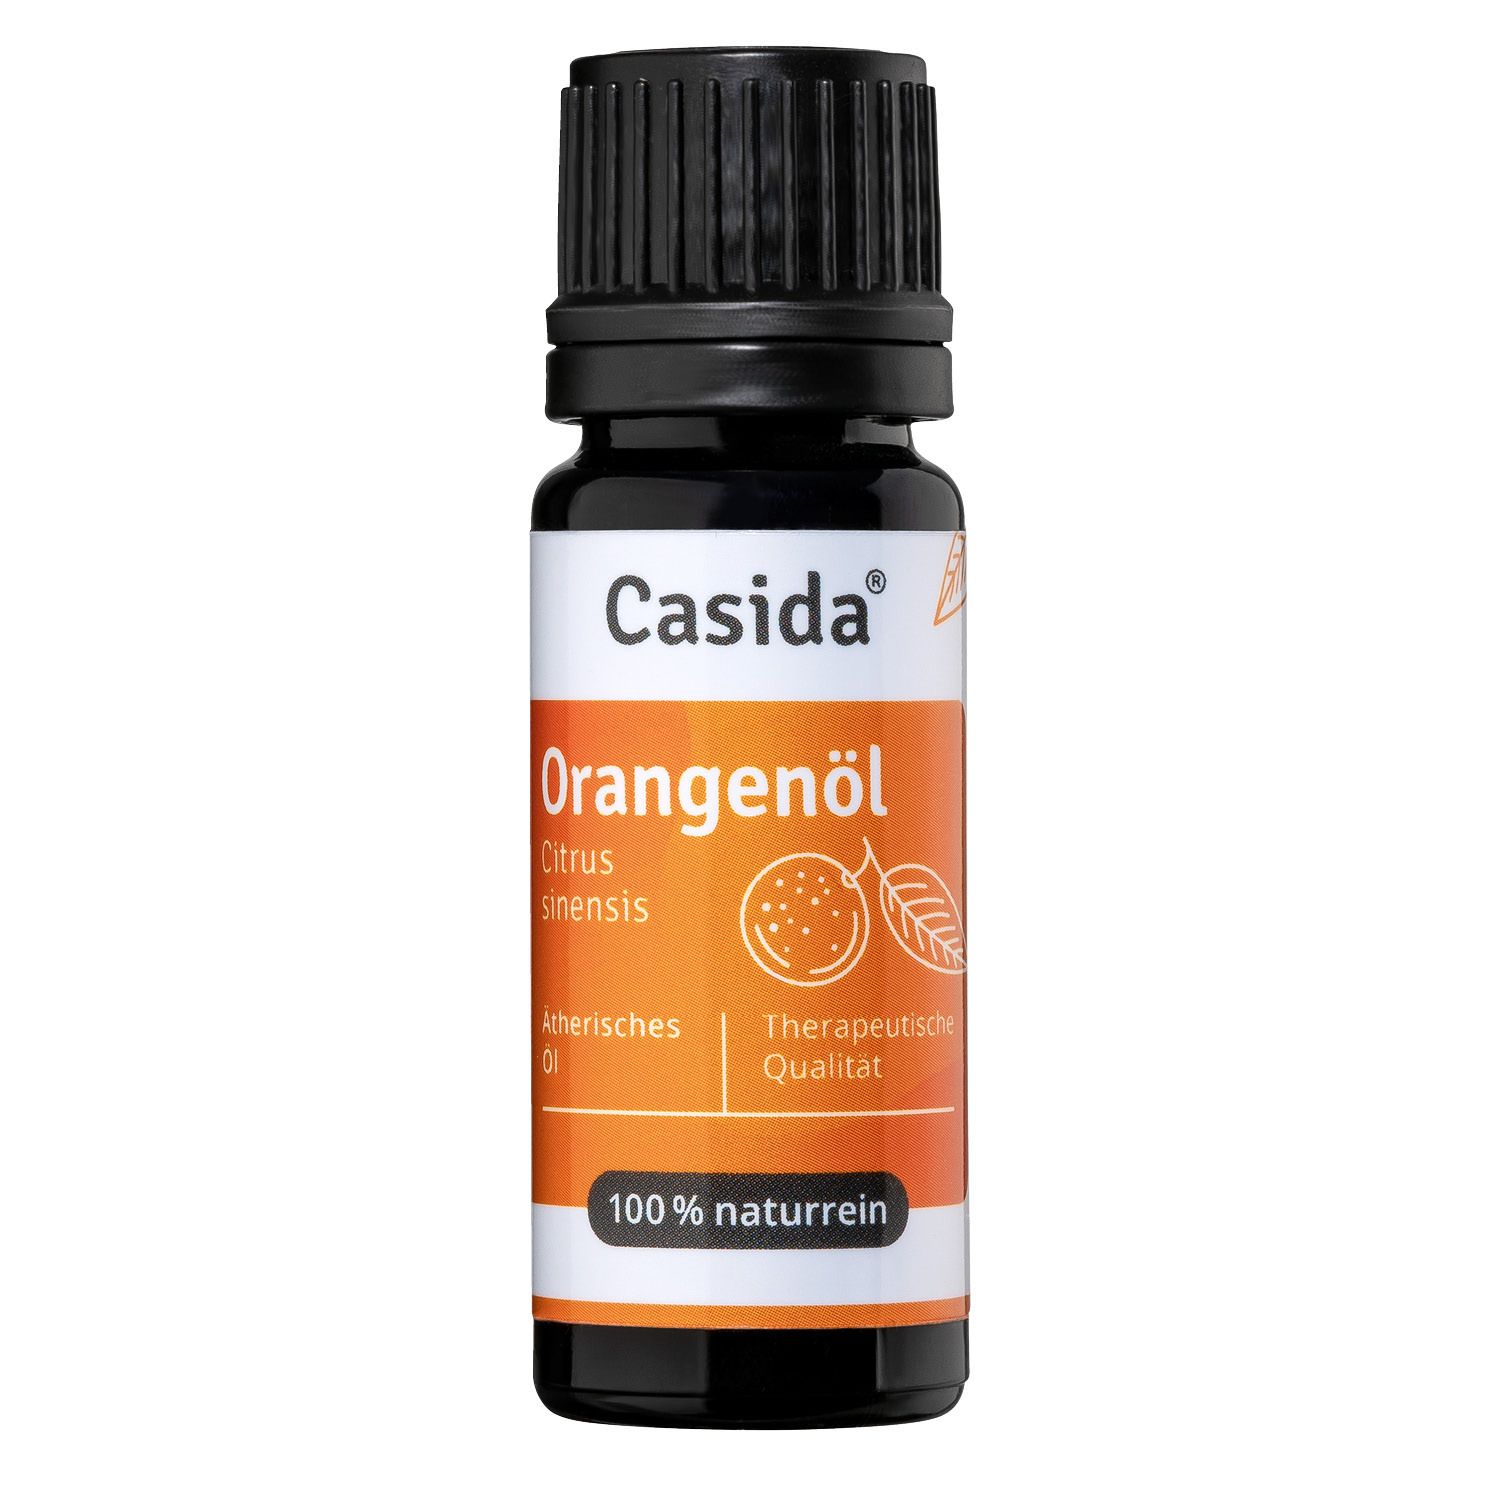 Image of Casida® Orangenöl